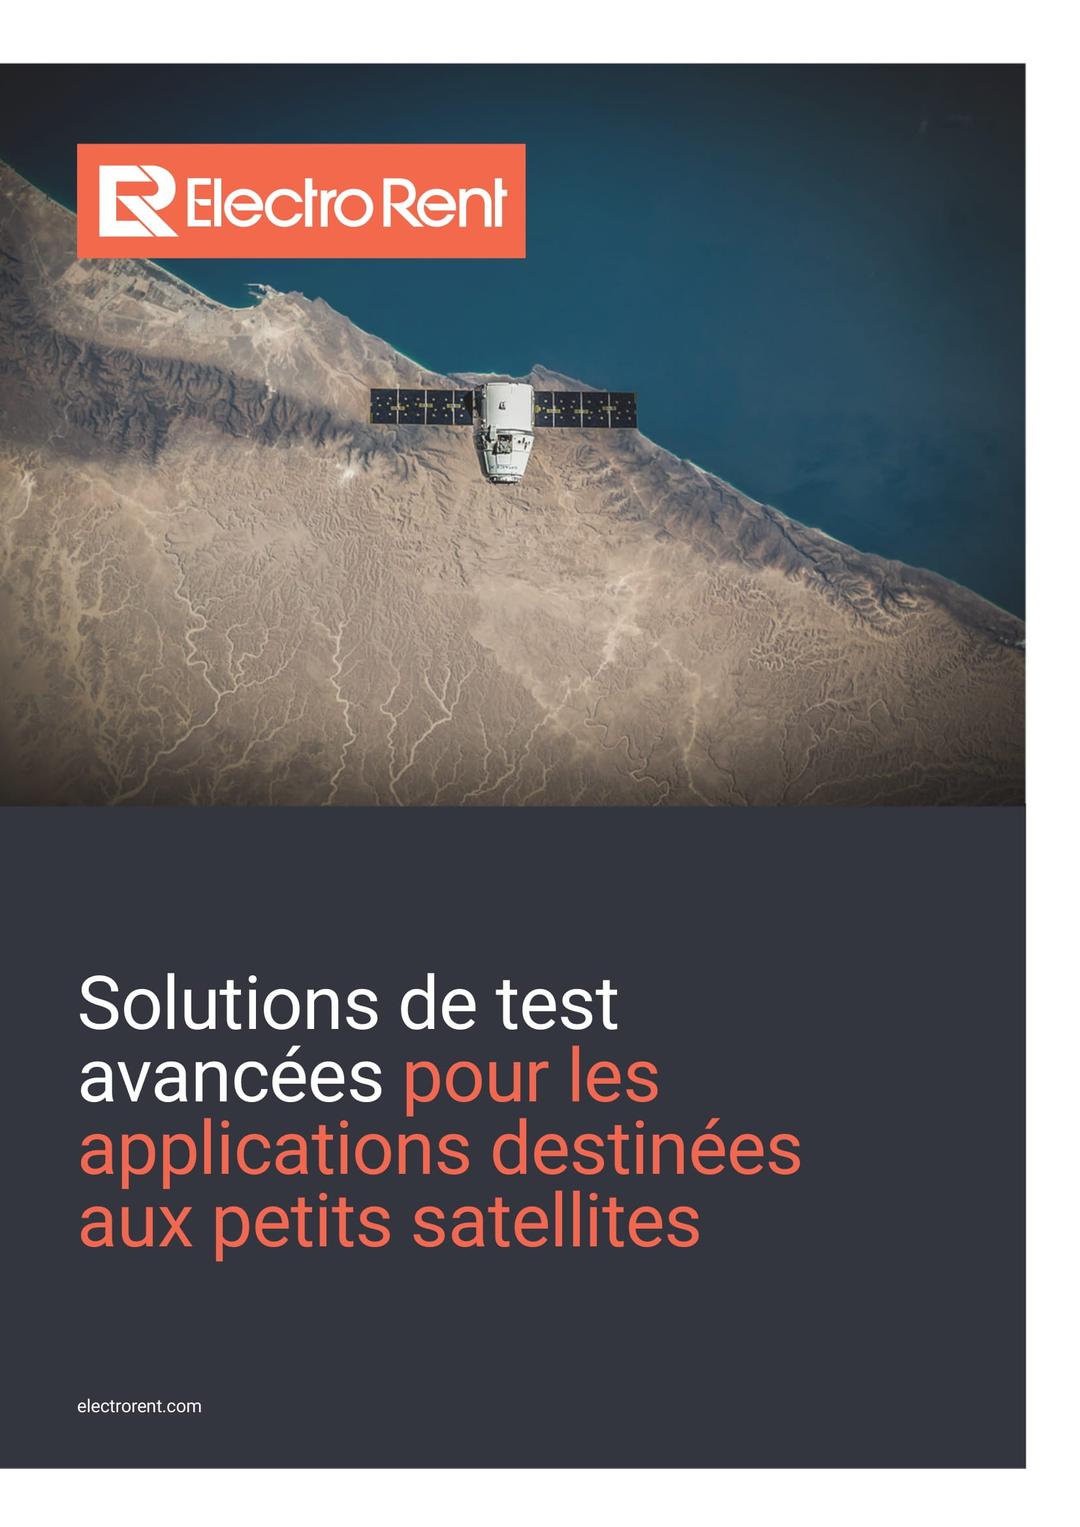 Solutions de test avancées pour les petits satellites, image